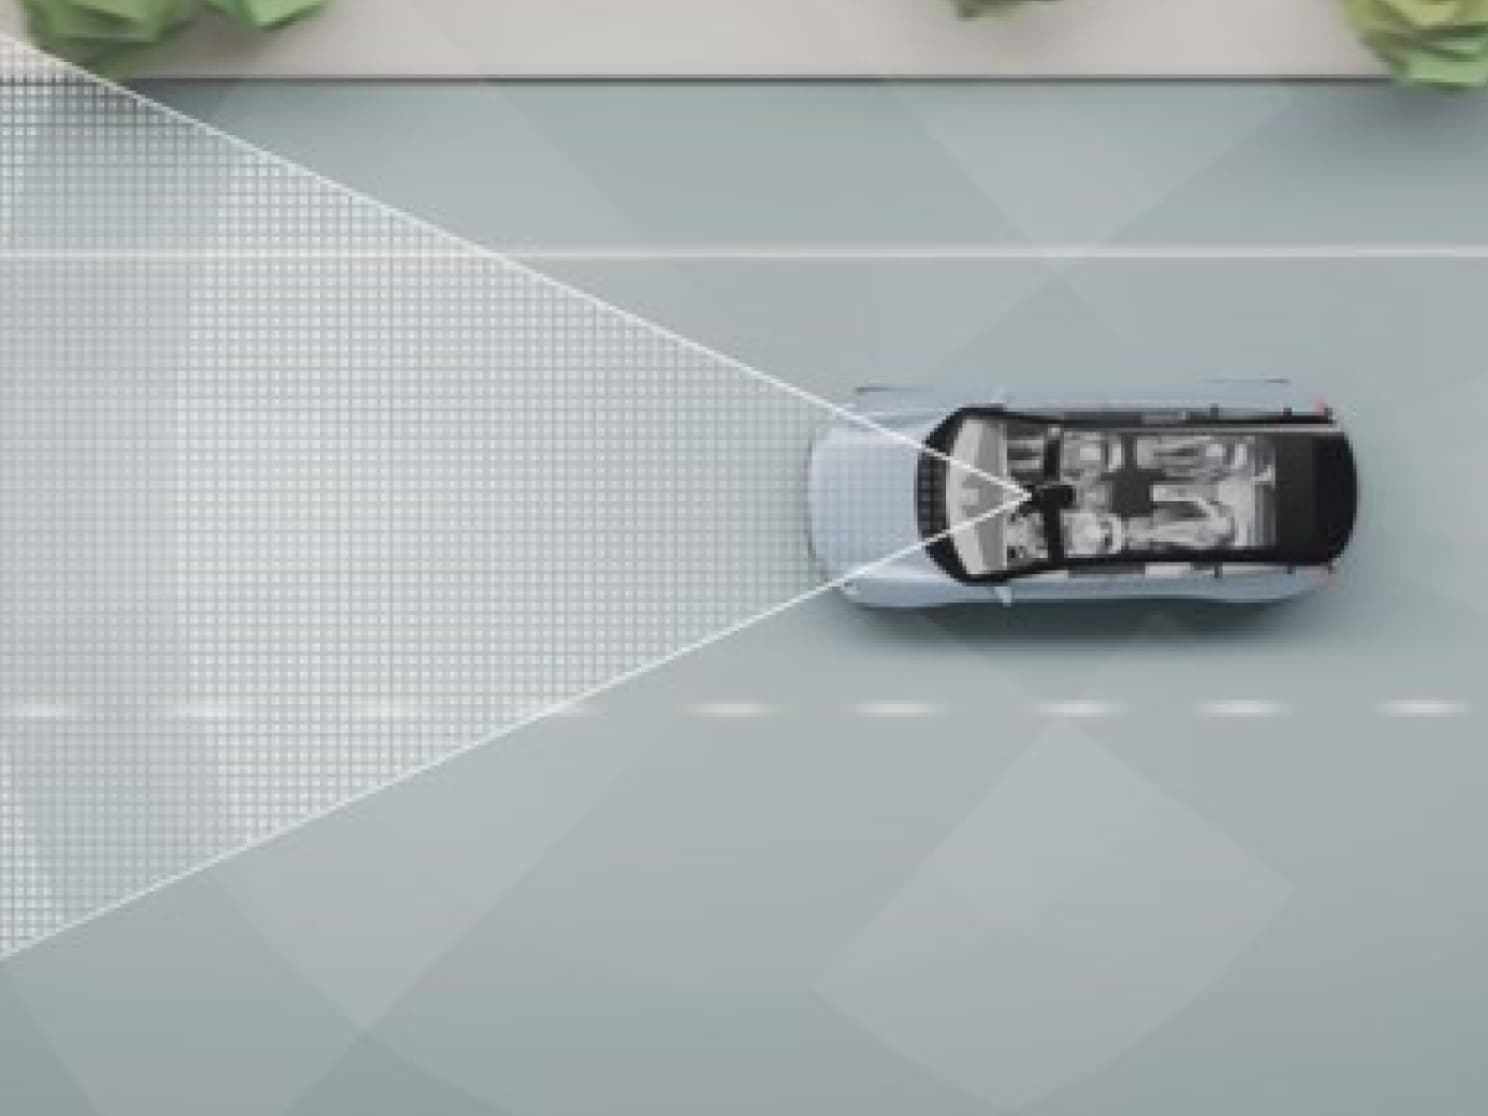 Digitalni prikaz automobila na cesti s linijama i drugim objektima.